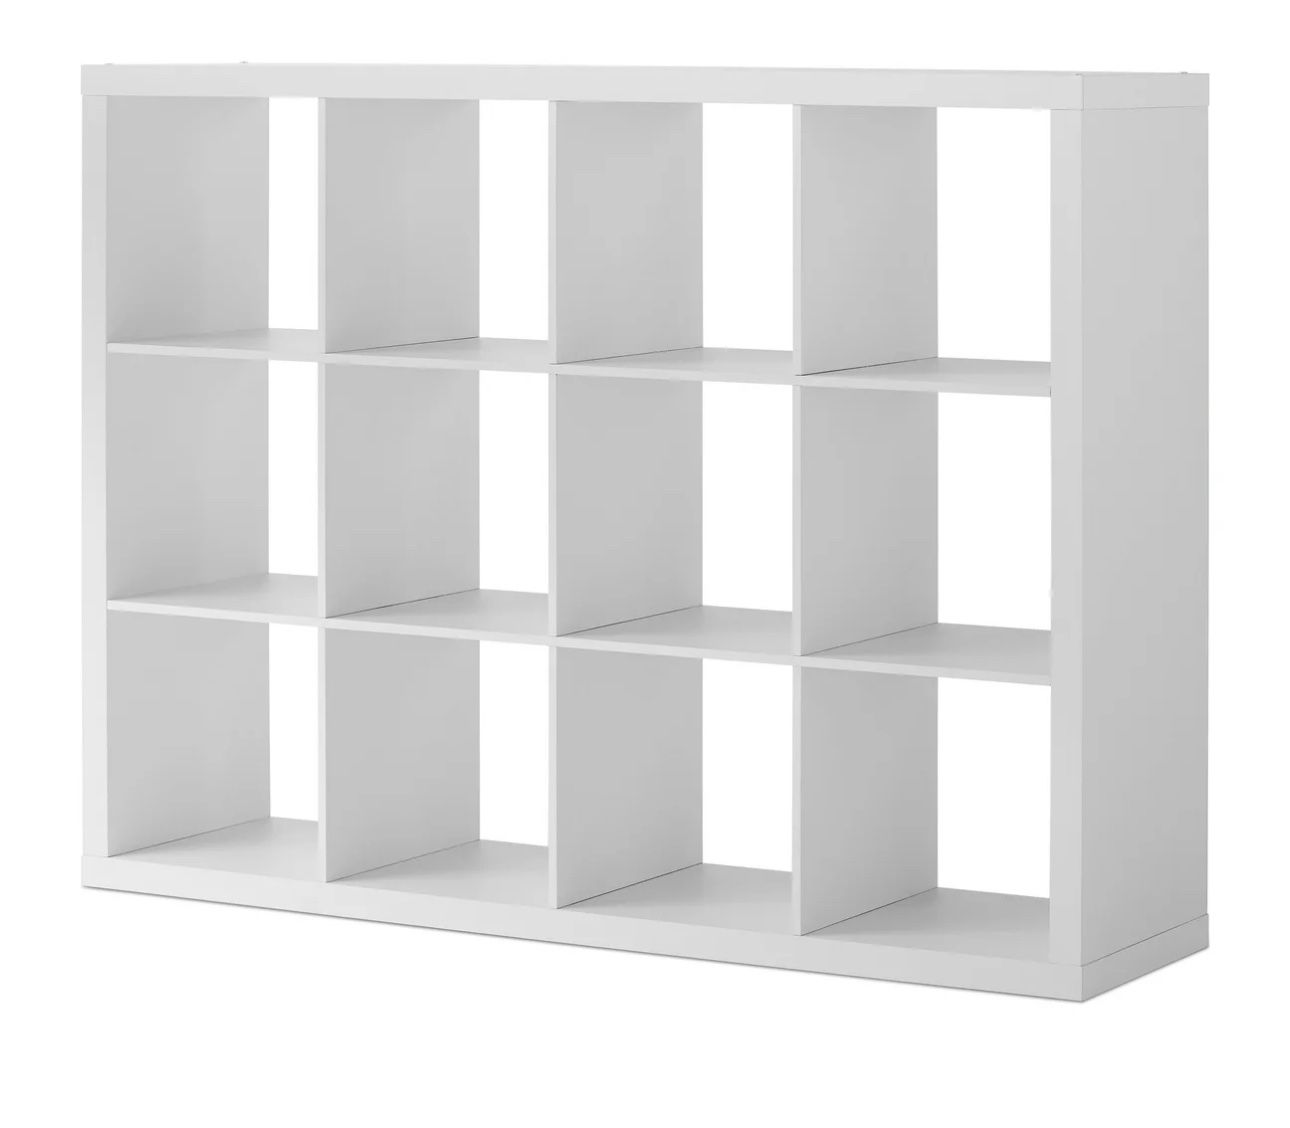 Better Homes & Gardens 12-Cube Storage Organizer, White Texture